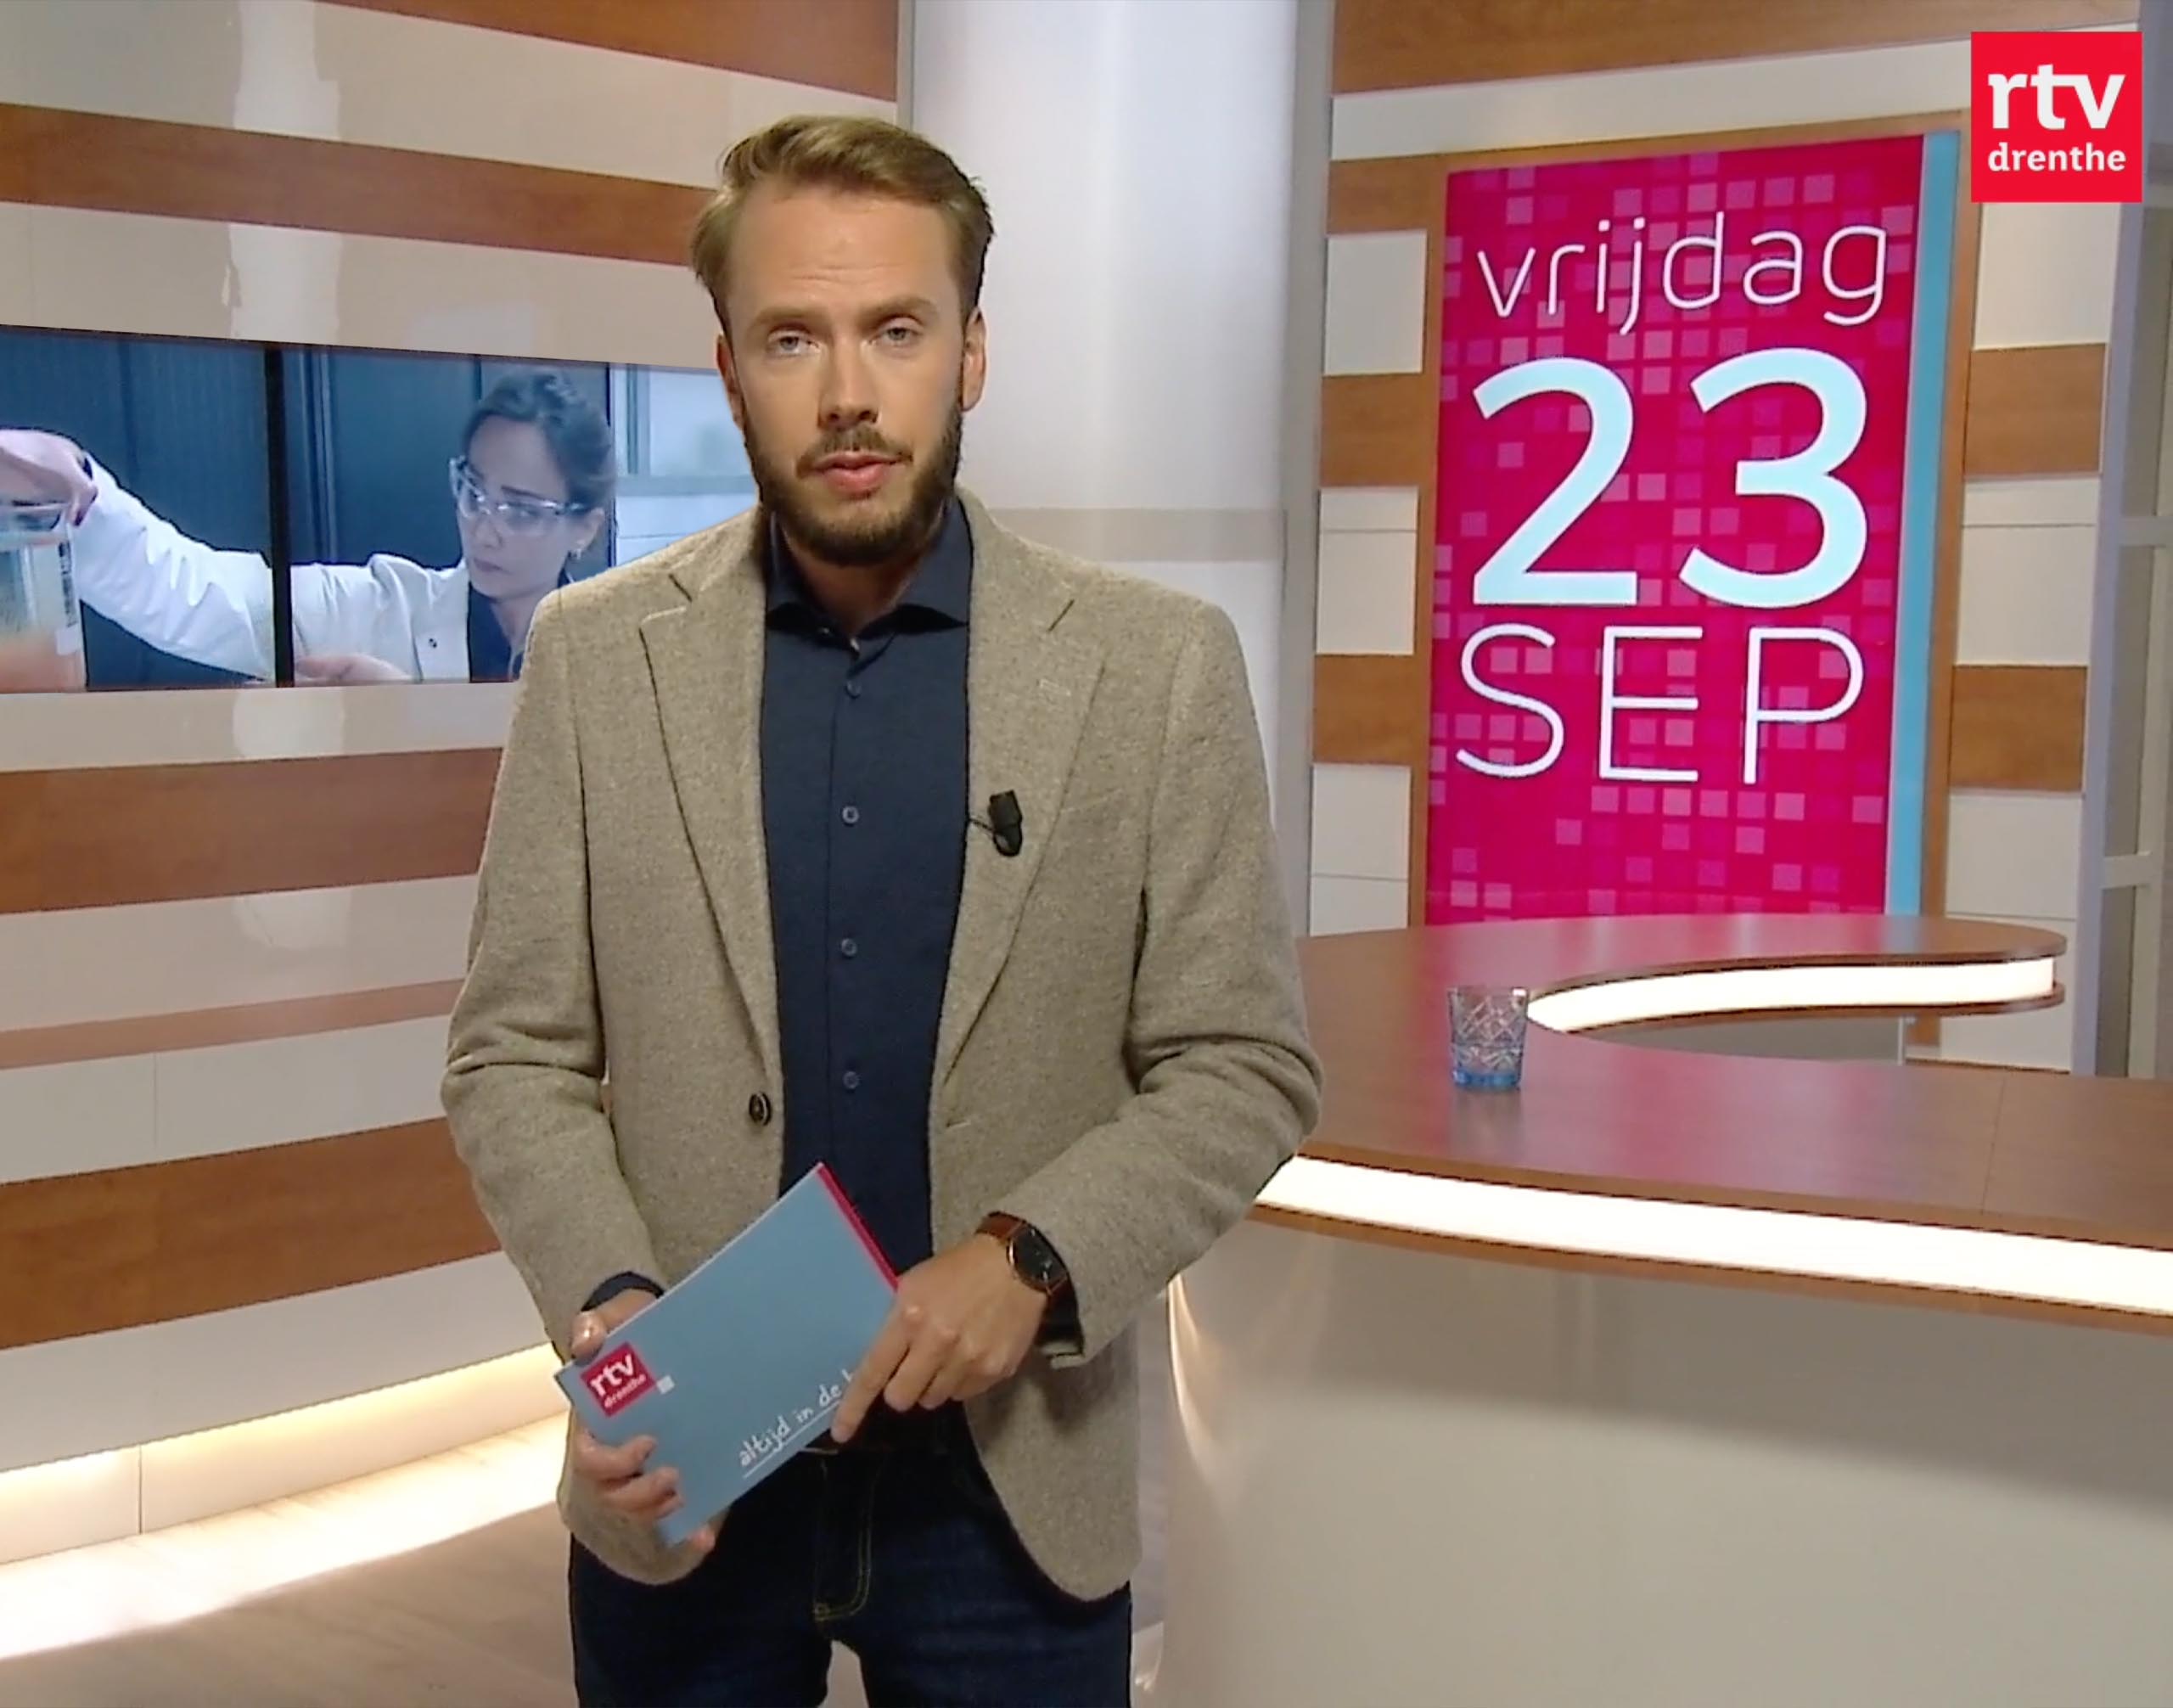 RTV Drenthe Ferr-Tech appearance on TV